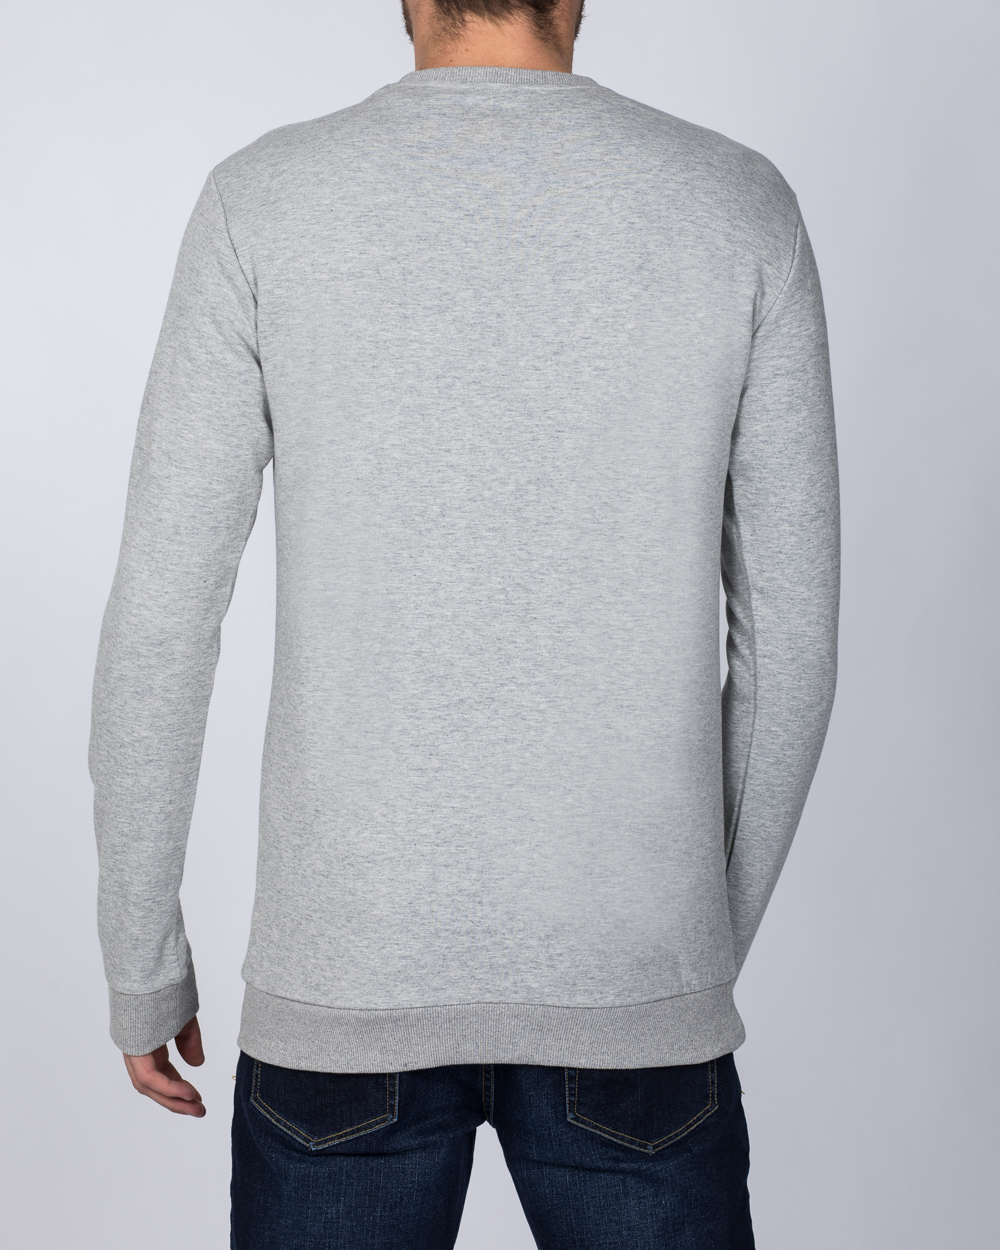 2t Tall Slim Fit Sweatshirt (heather grey) | 2tall.com